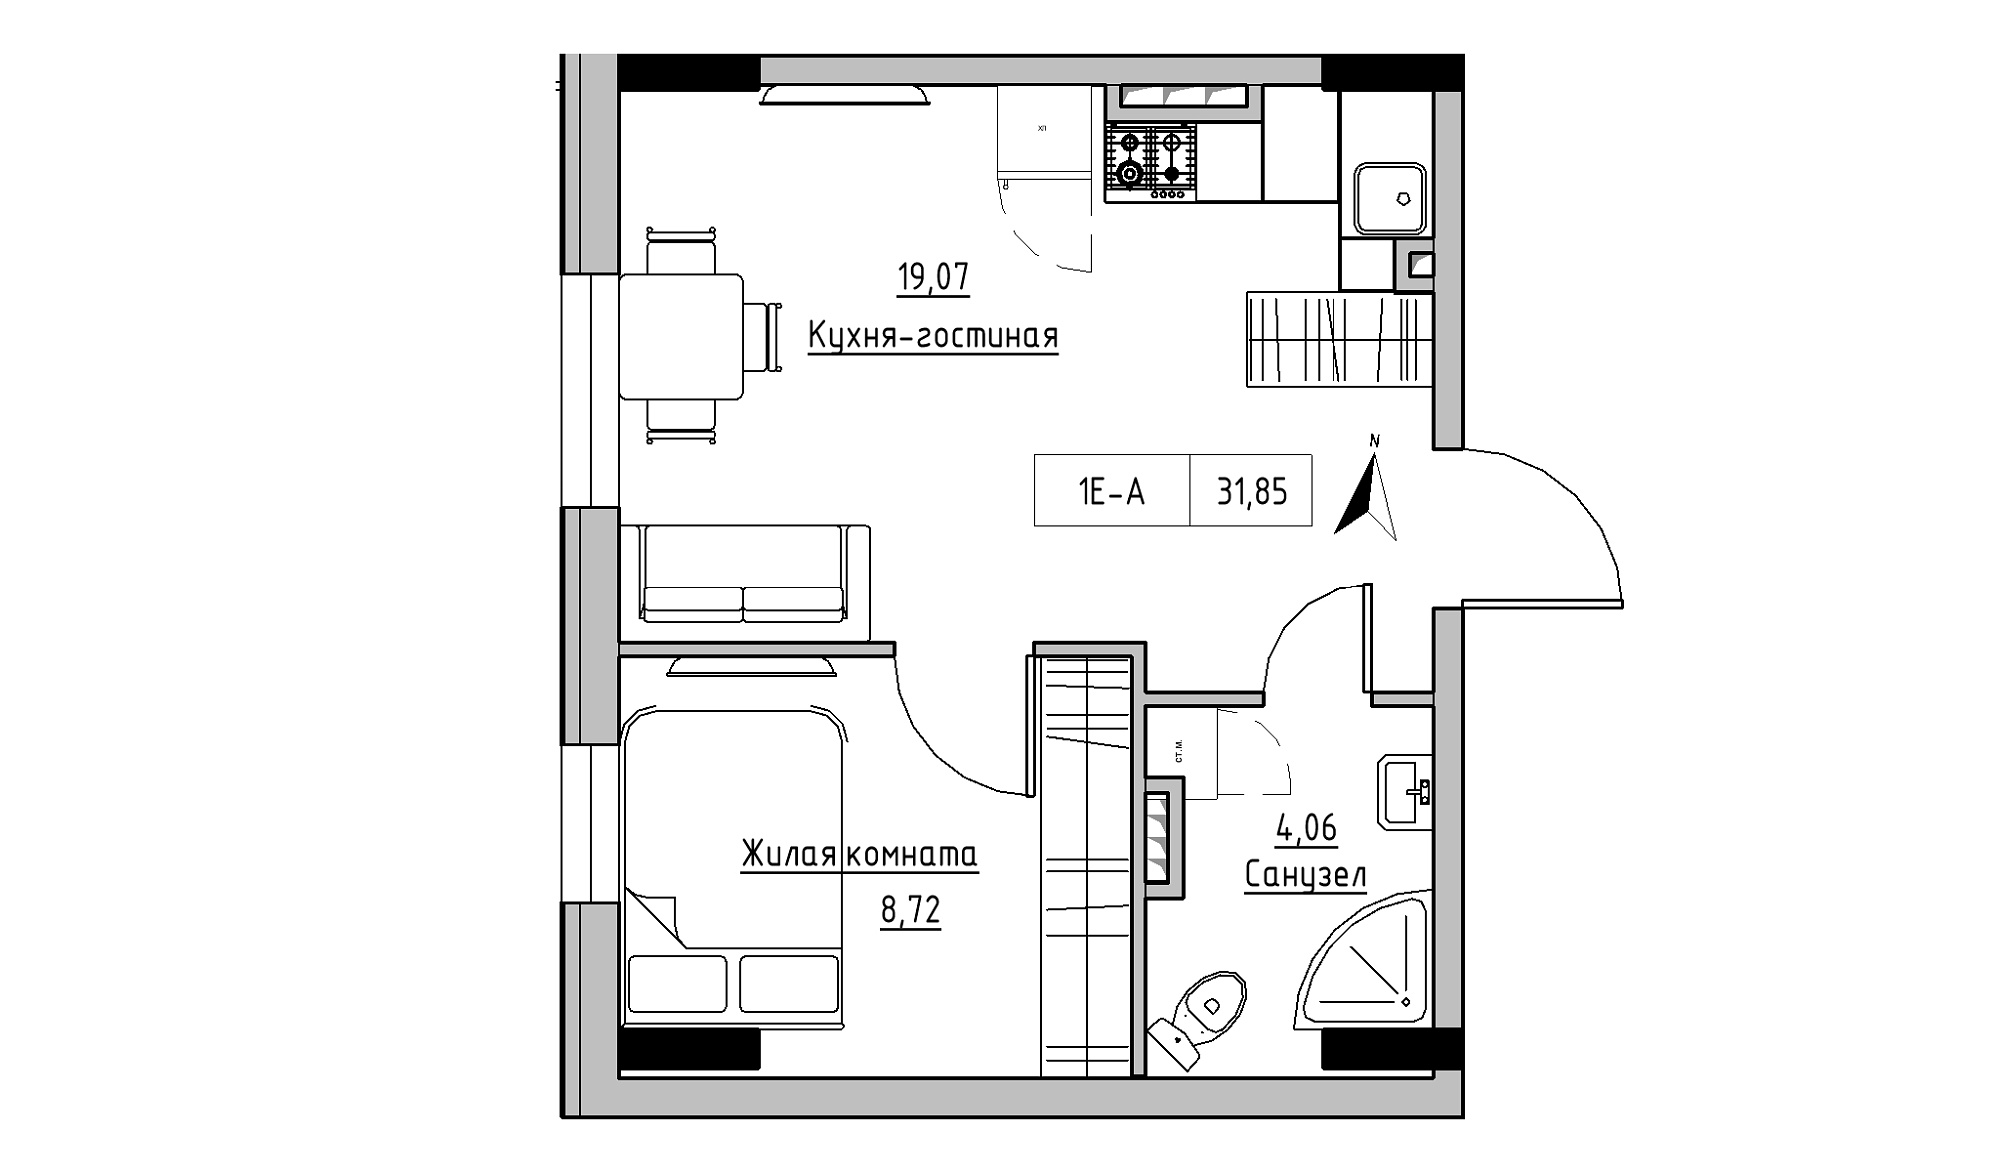 Планування 1-к квартира площею 31.85м2, KS-025-03/0003.